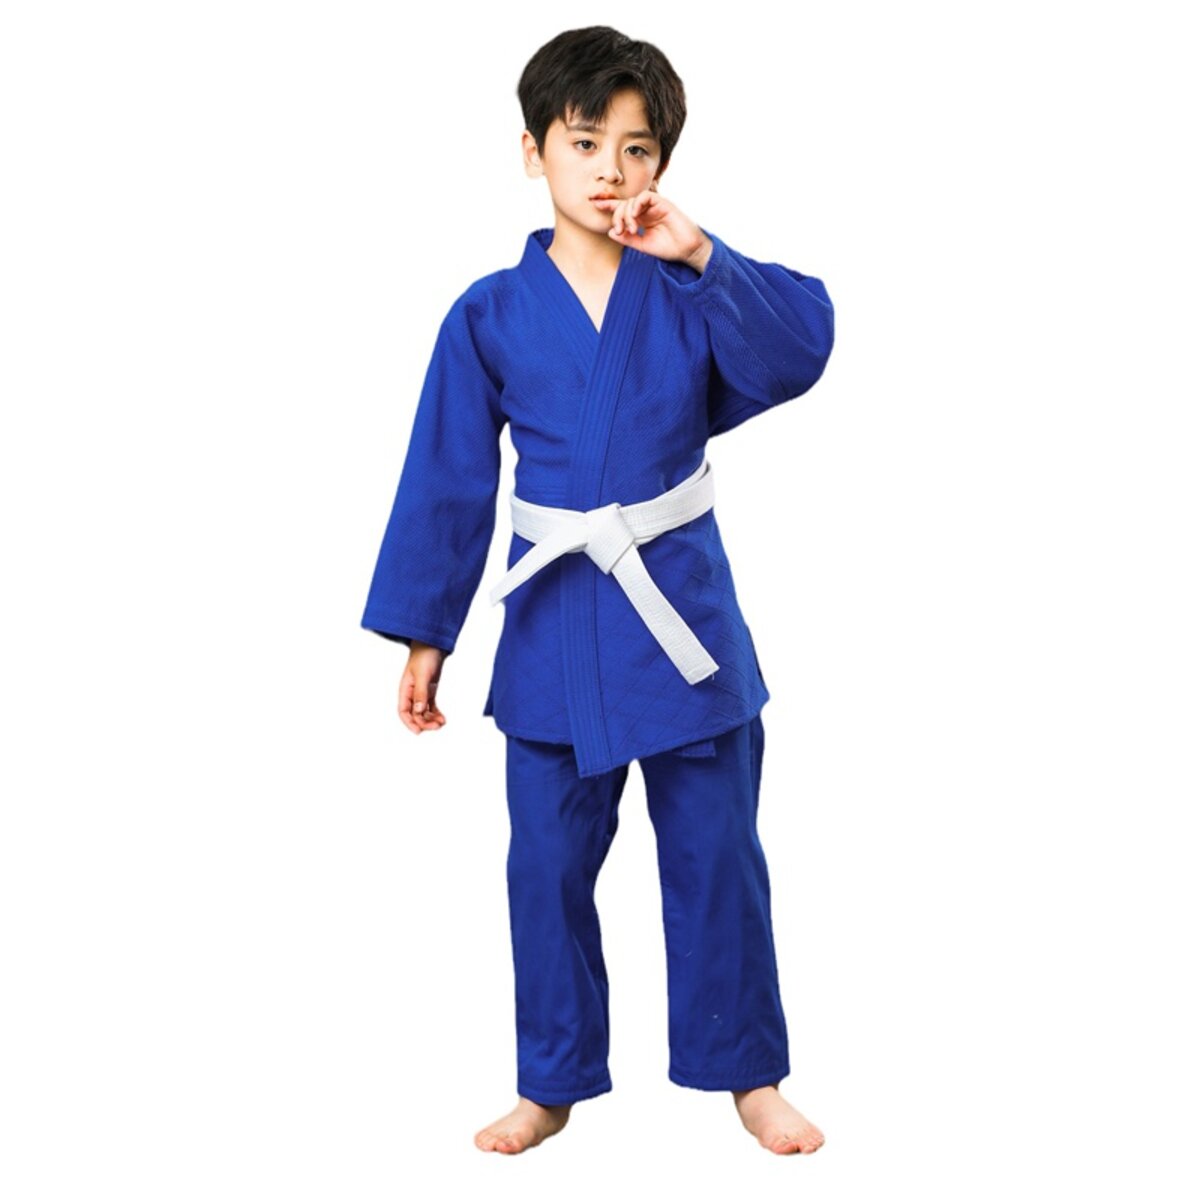 Đồng phục Judo đảm bảo độ bền đẹp